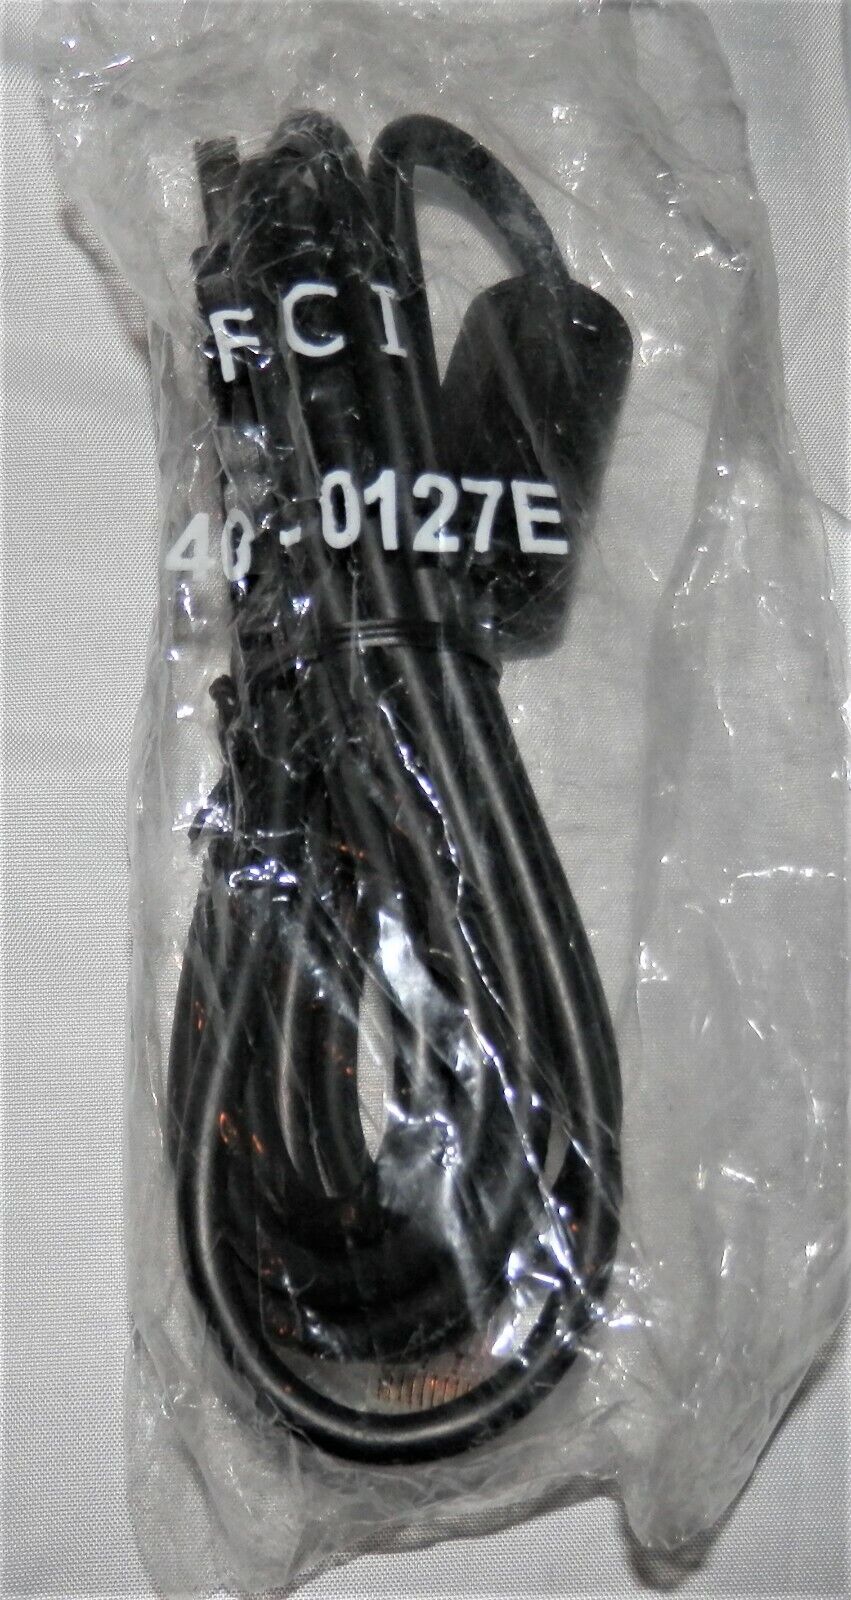 FCI 940-0127E HANNSTAR USB Shielded High Speed Cable NIB Sealed